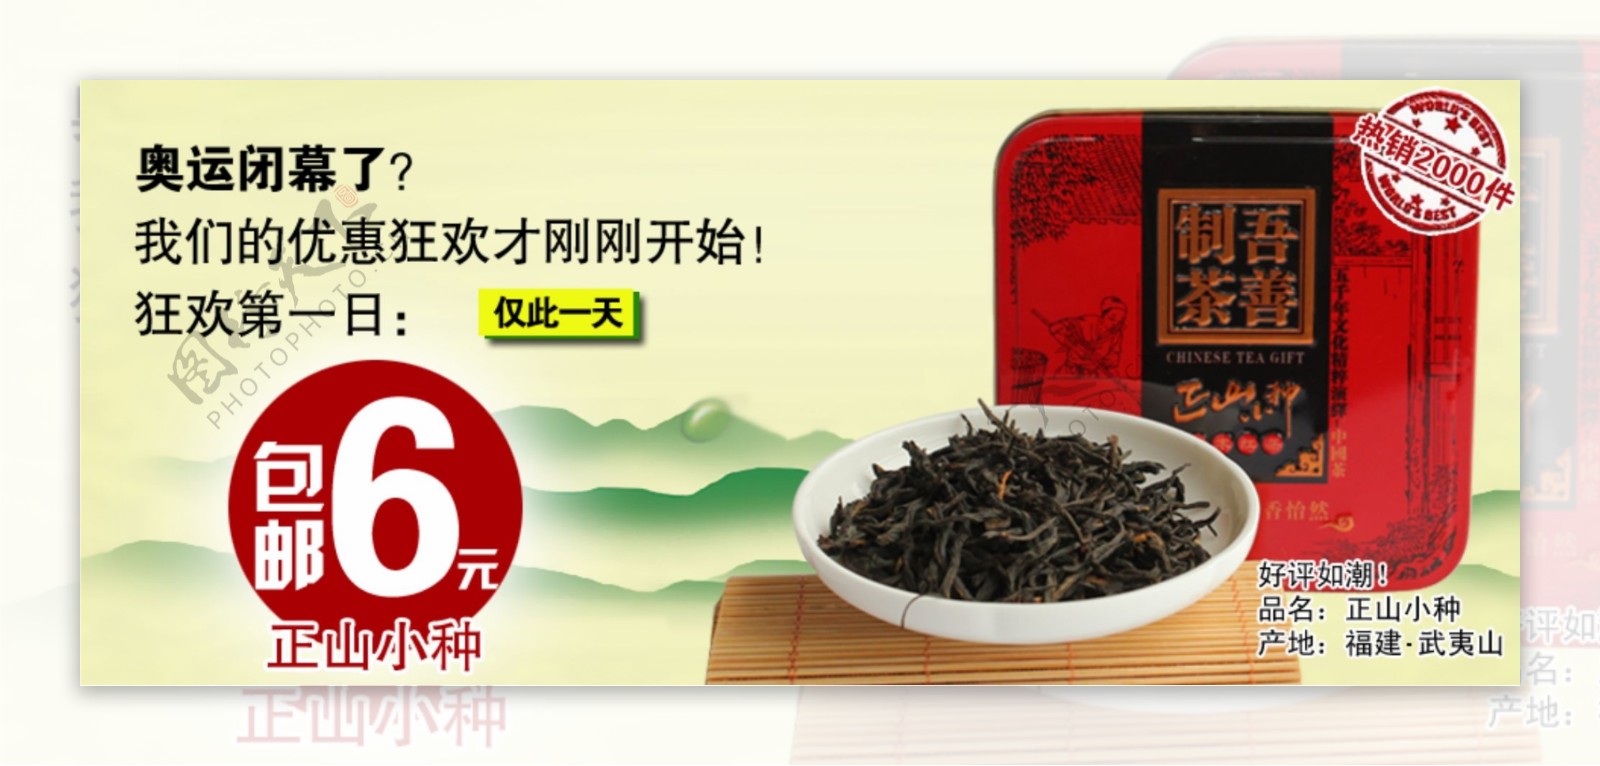 淘宝茶叶包邮广告图片